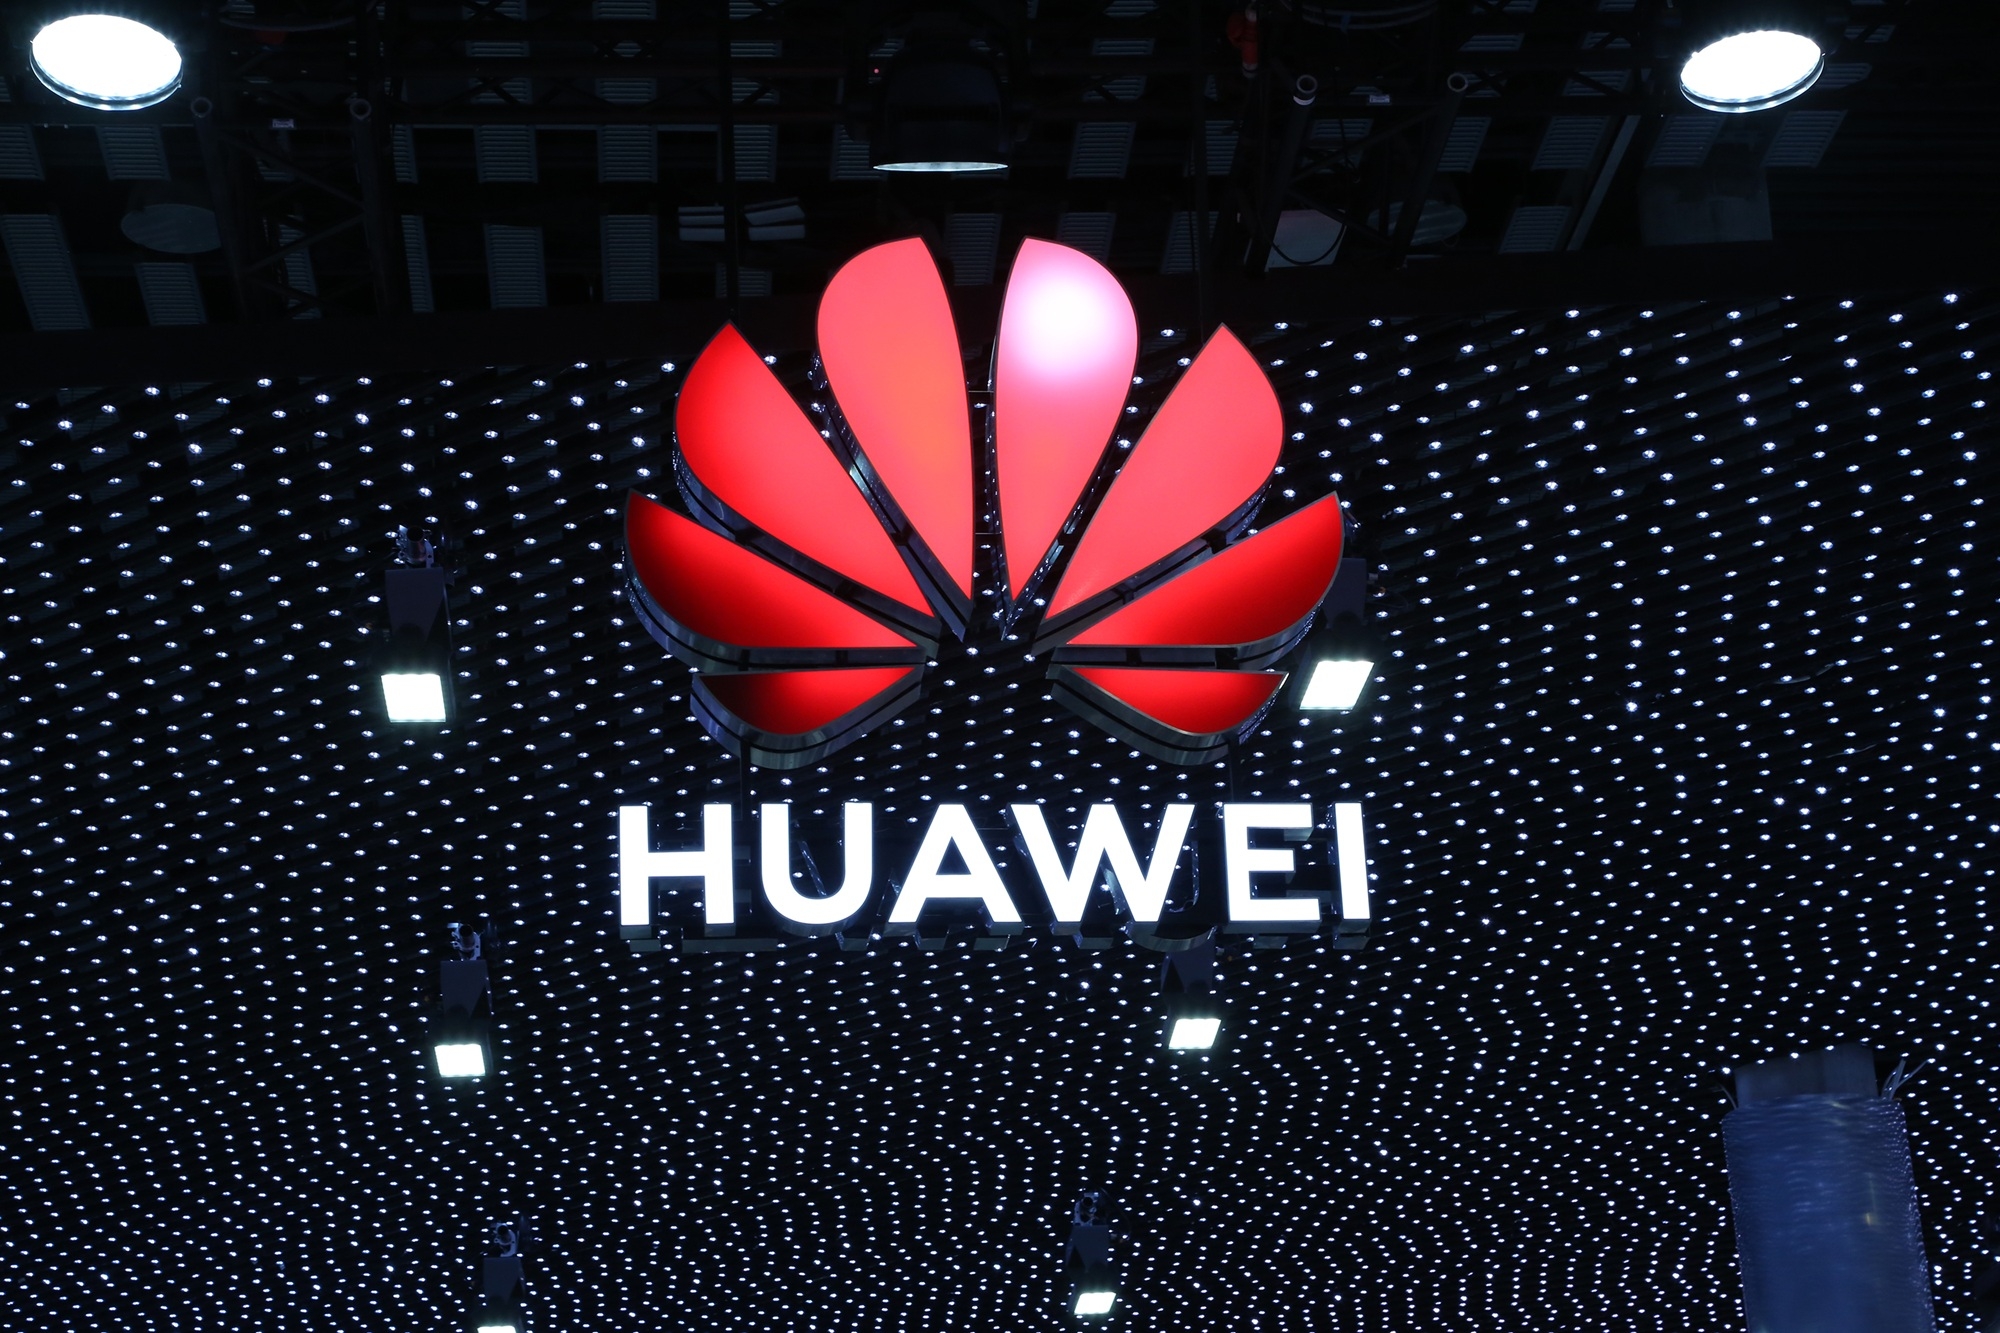 Huawei espera faturamento recorde de 2019 e prevê 2020 difícil